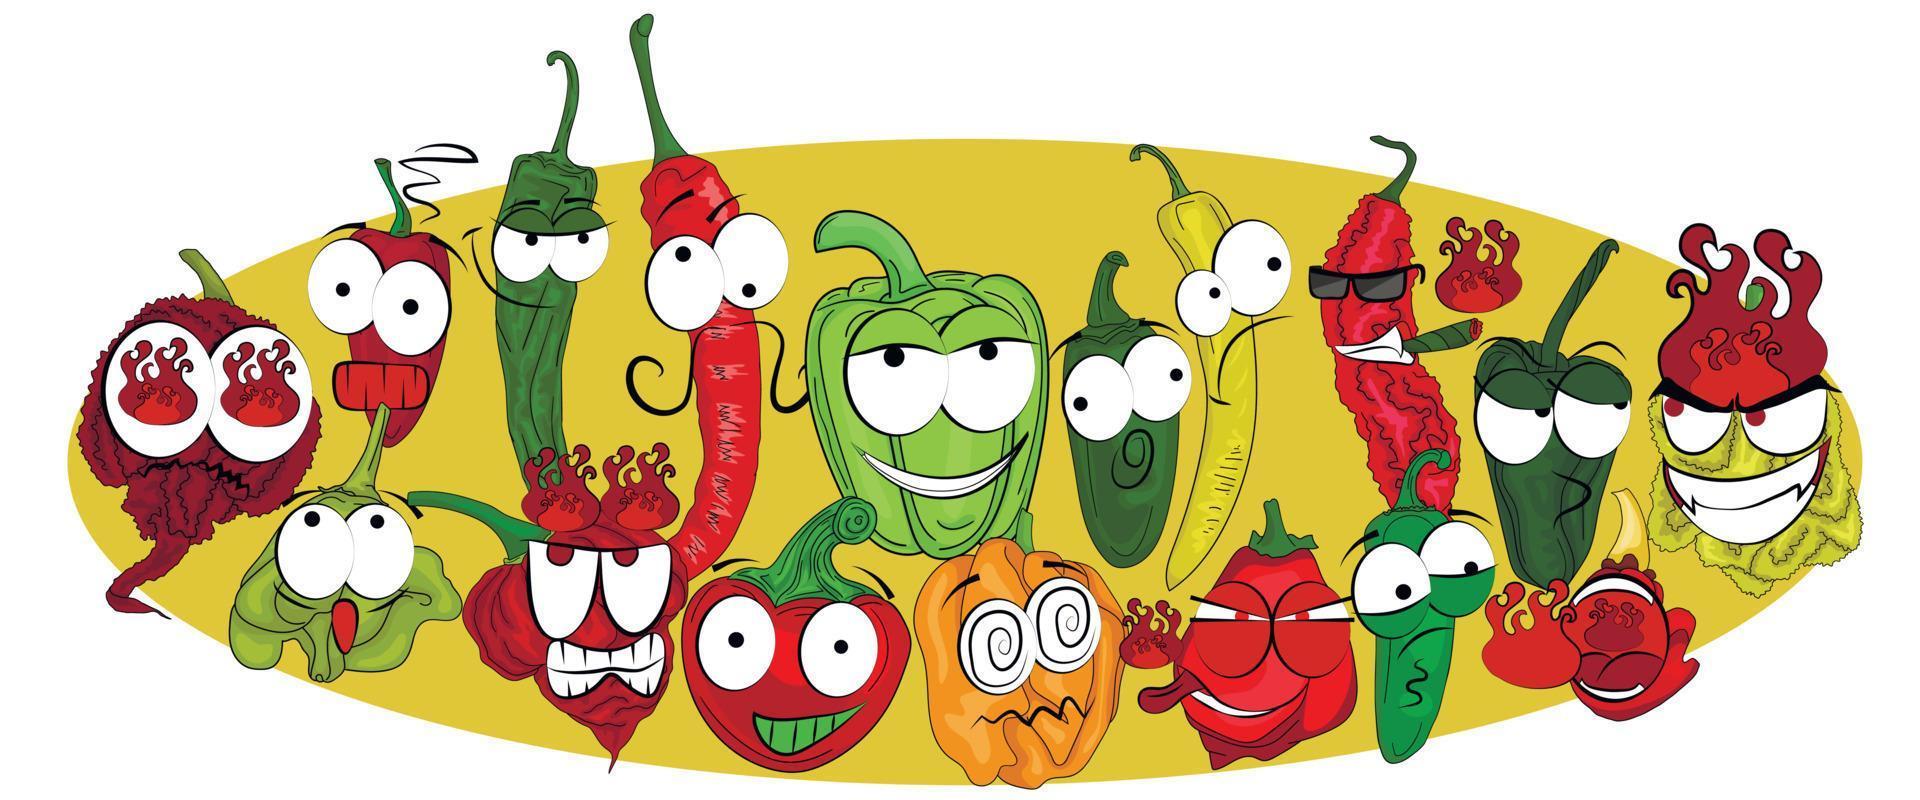 illustrazione di pepe da dolce a molto piccante su uno sfondo colorato. peperoni disegnati in stile cartone animato con diverse emozioni. vettore